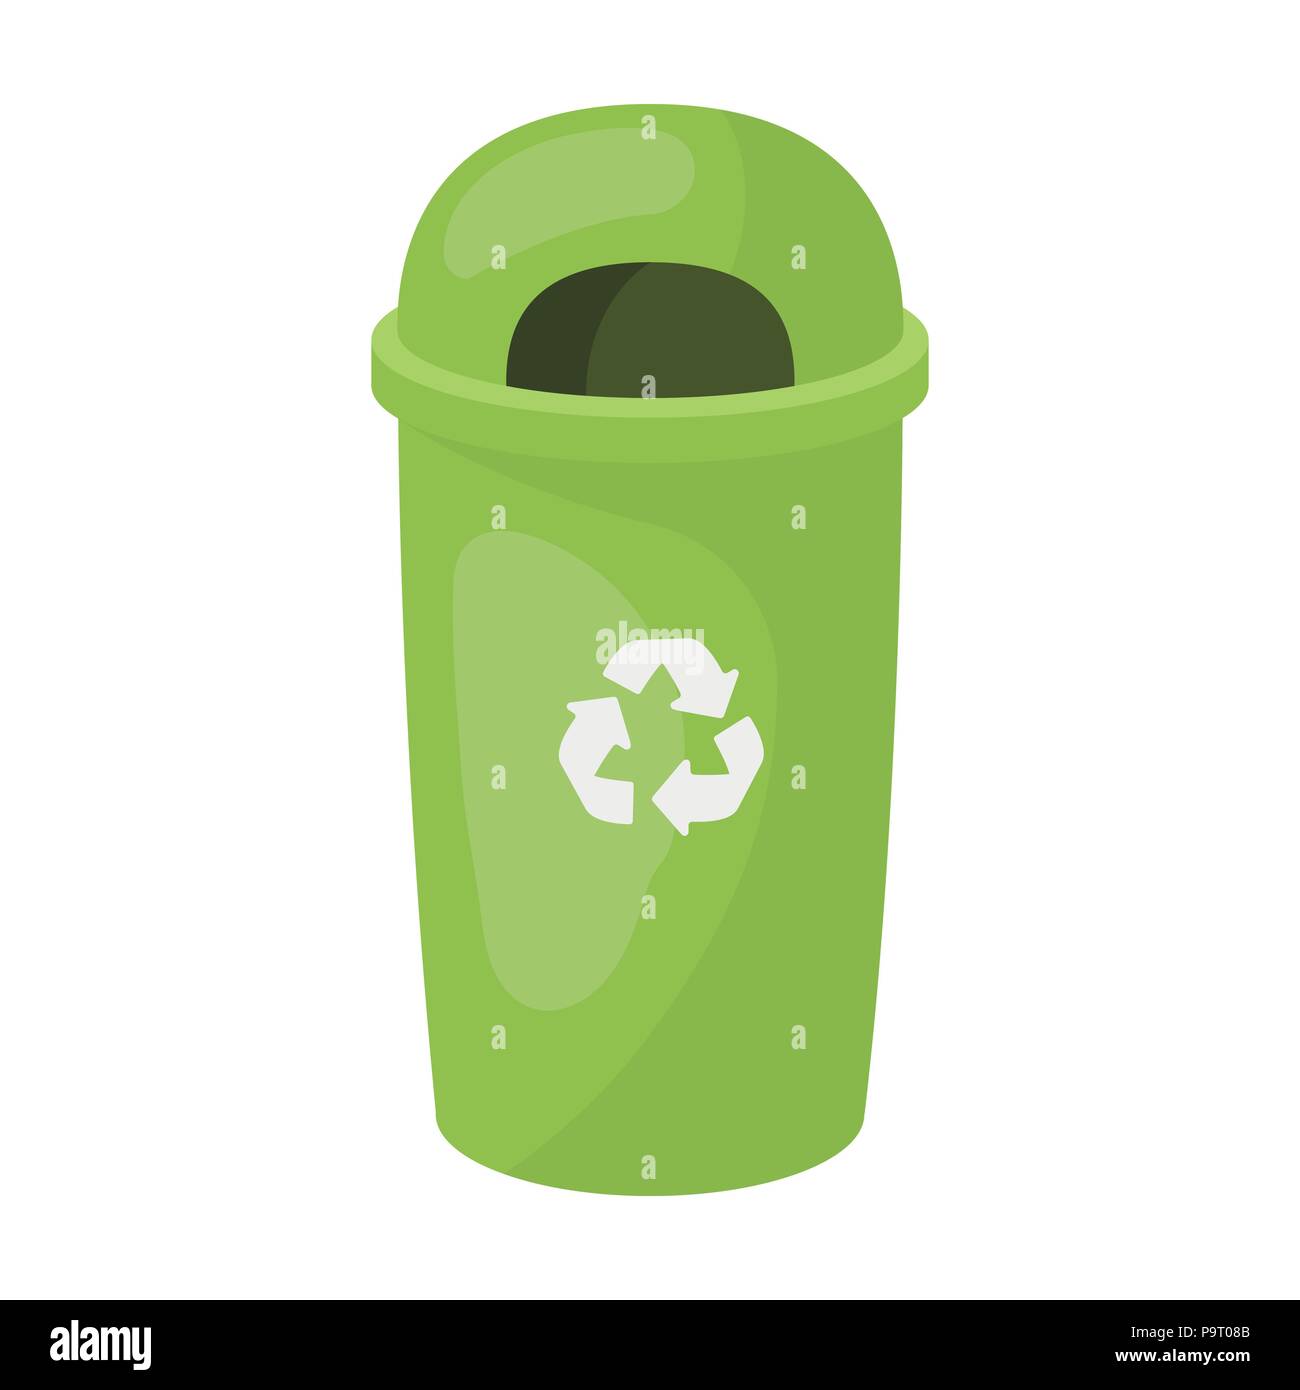 L'icône de la poubelle de recyclage dans la conception de dessin animé  isolé sur fond blanc. Bio et écologie stock symbol vector illustration  Image Vectorielle Stock - Alamy